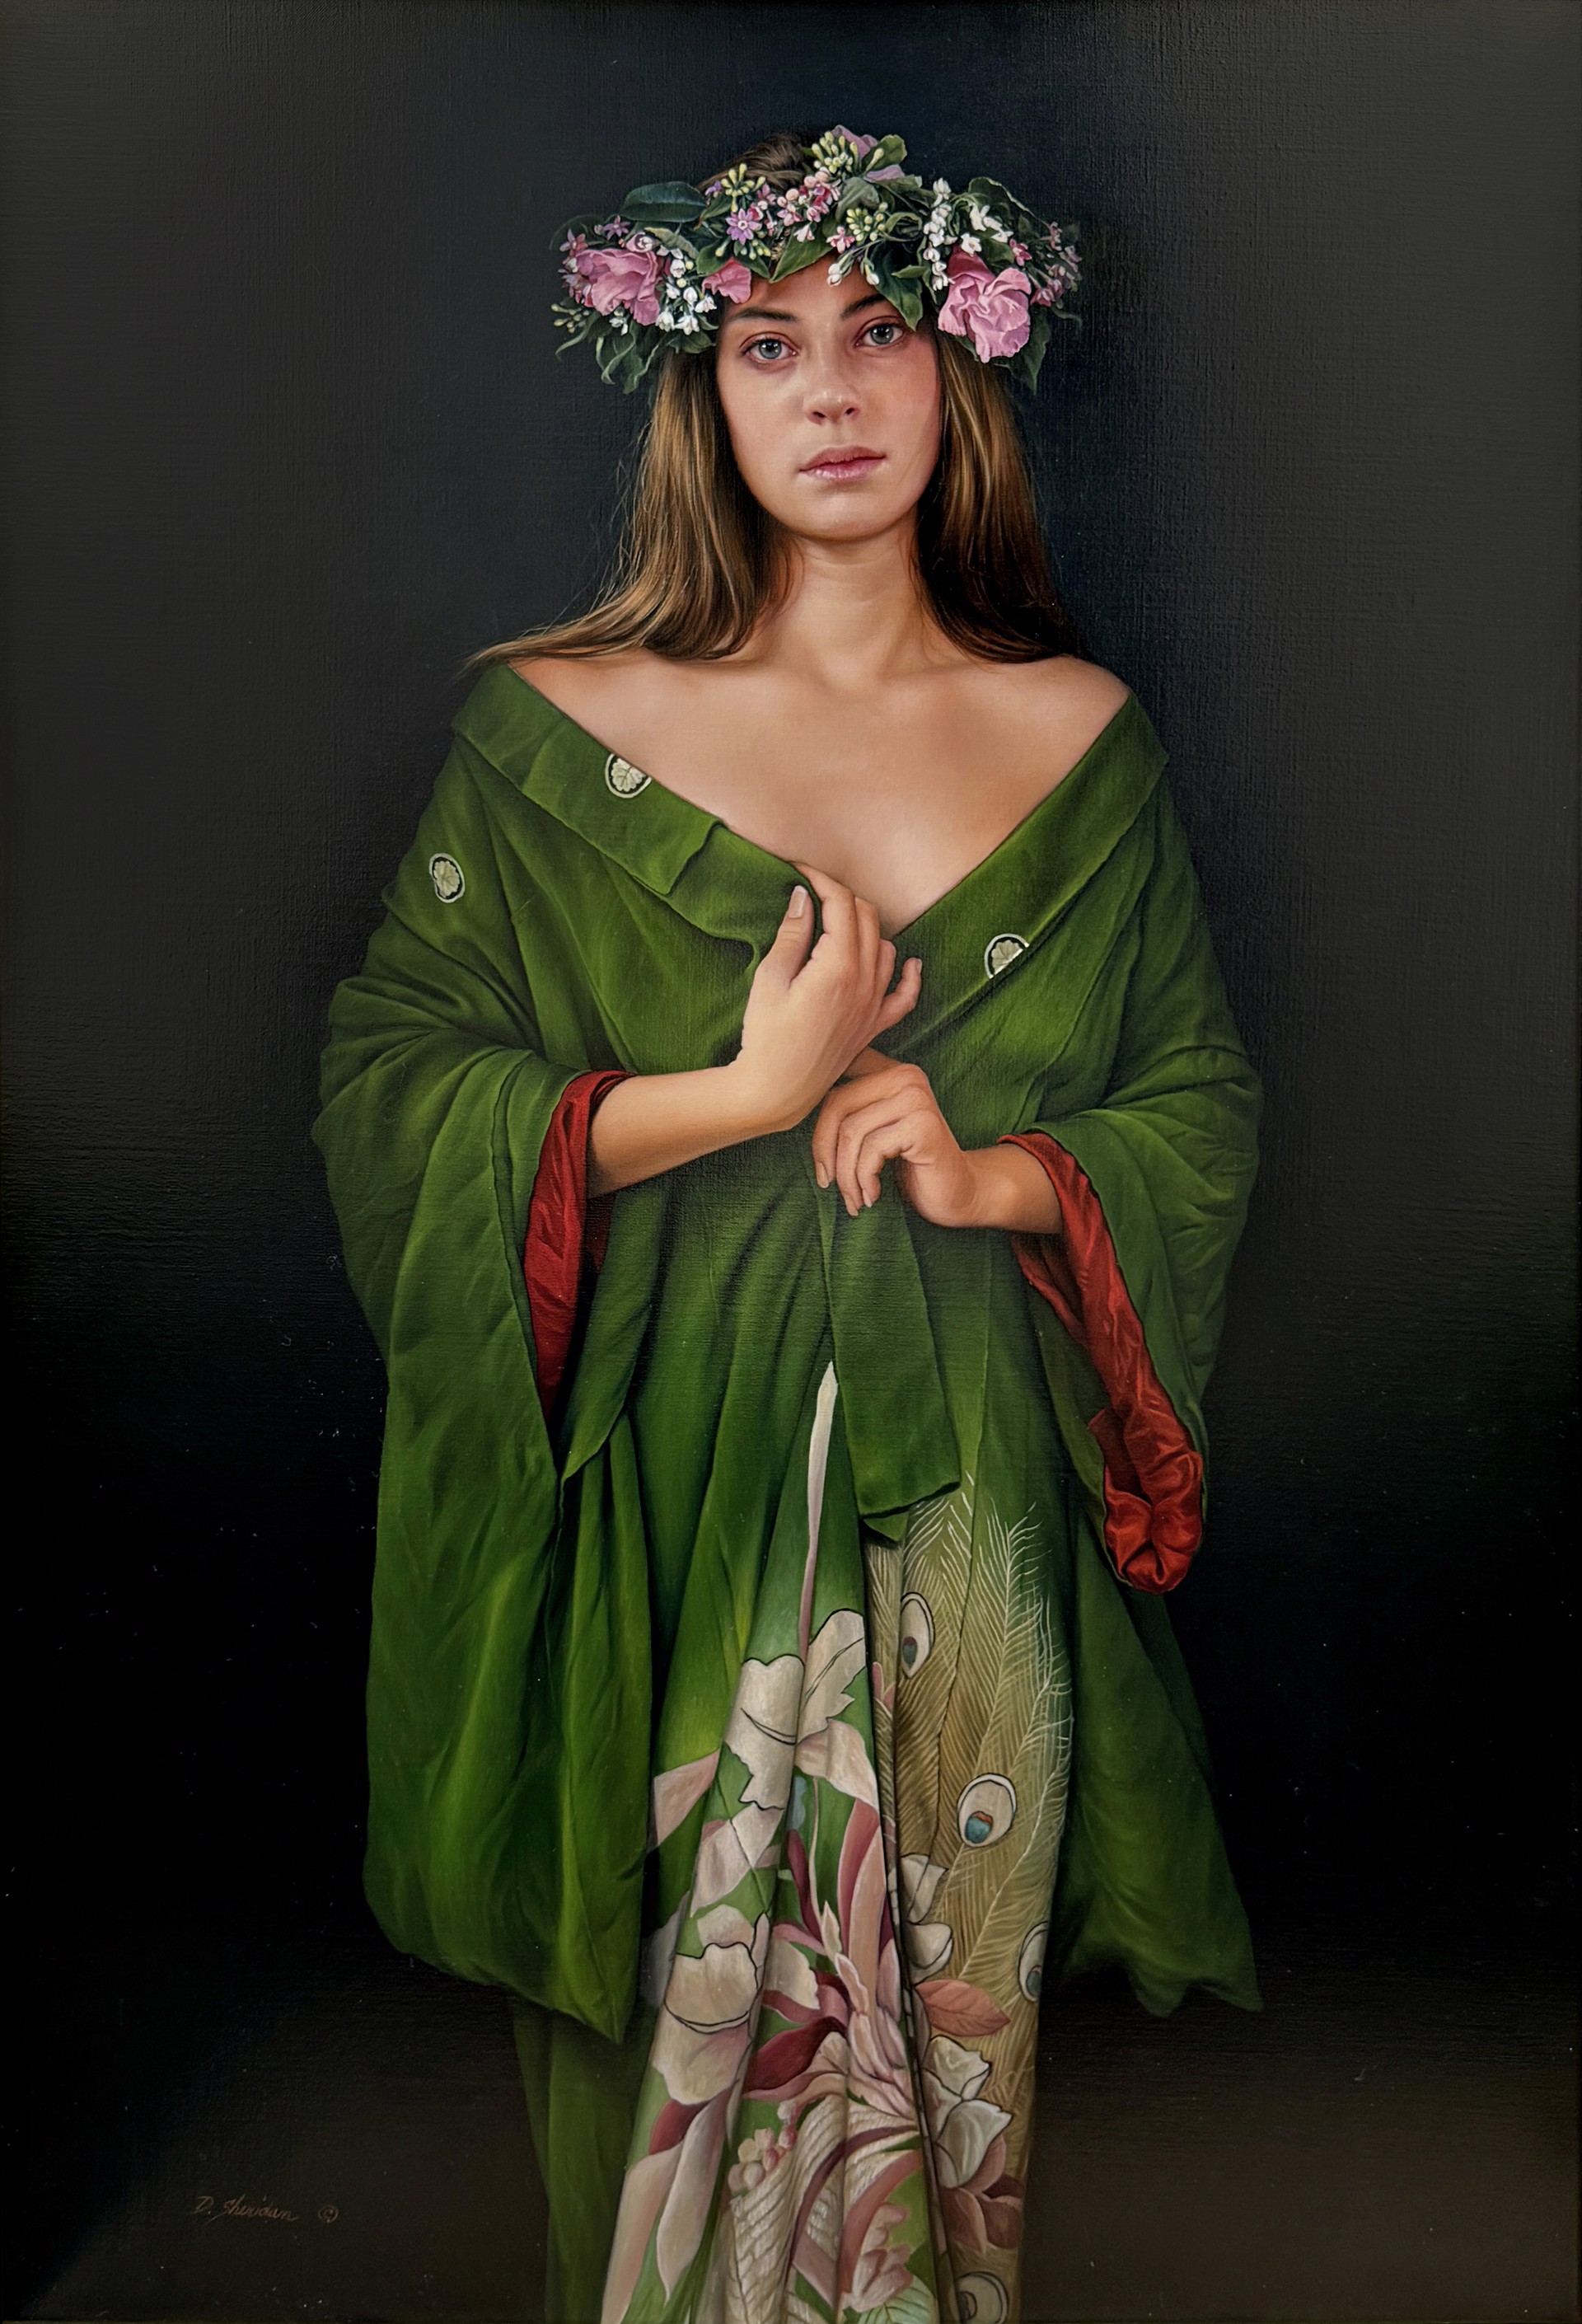 The Green Kimono by Duffy Sheridan